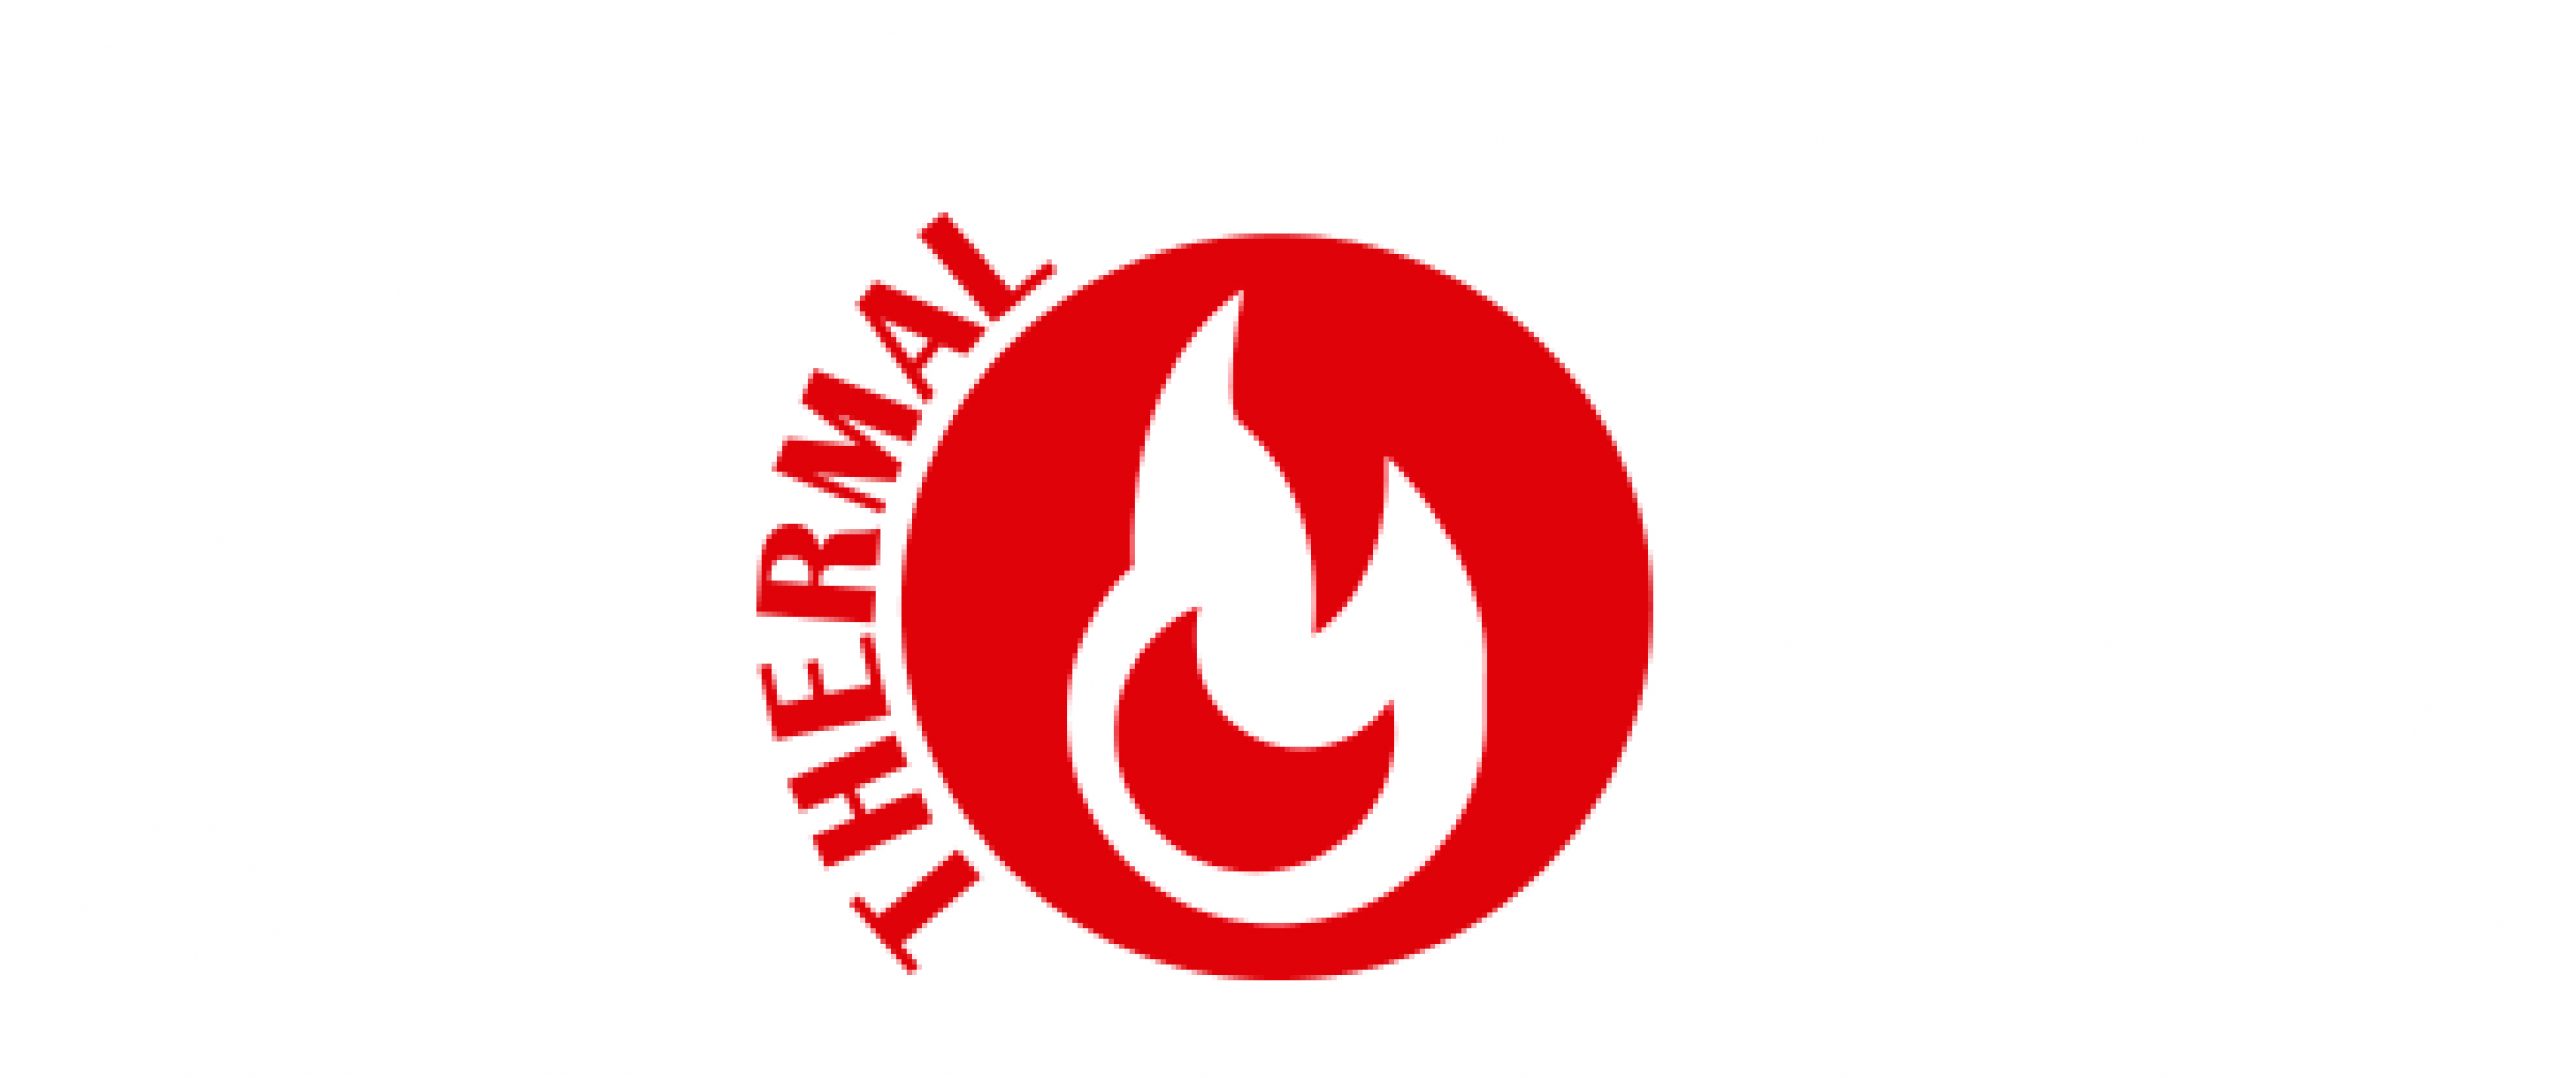 thermal